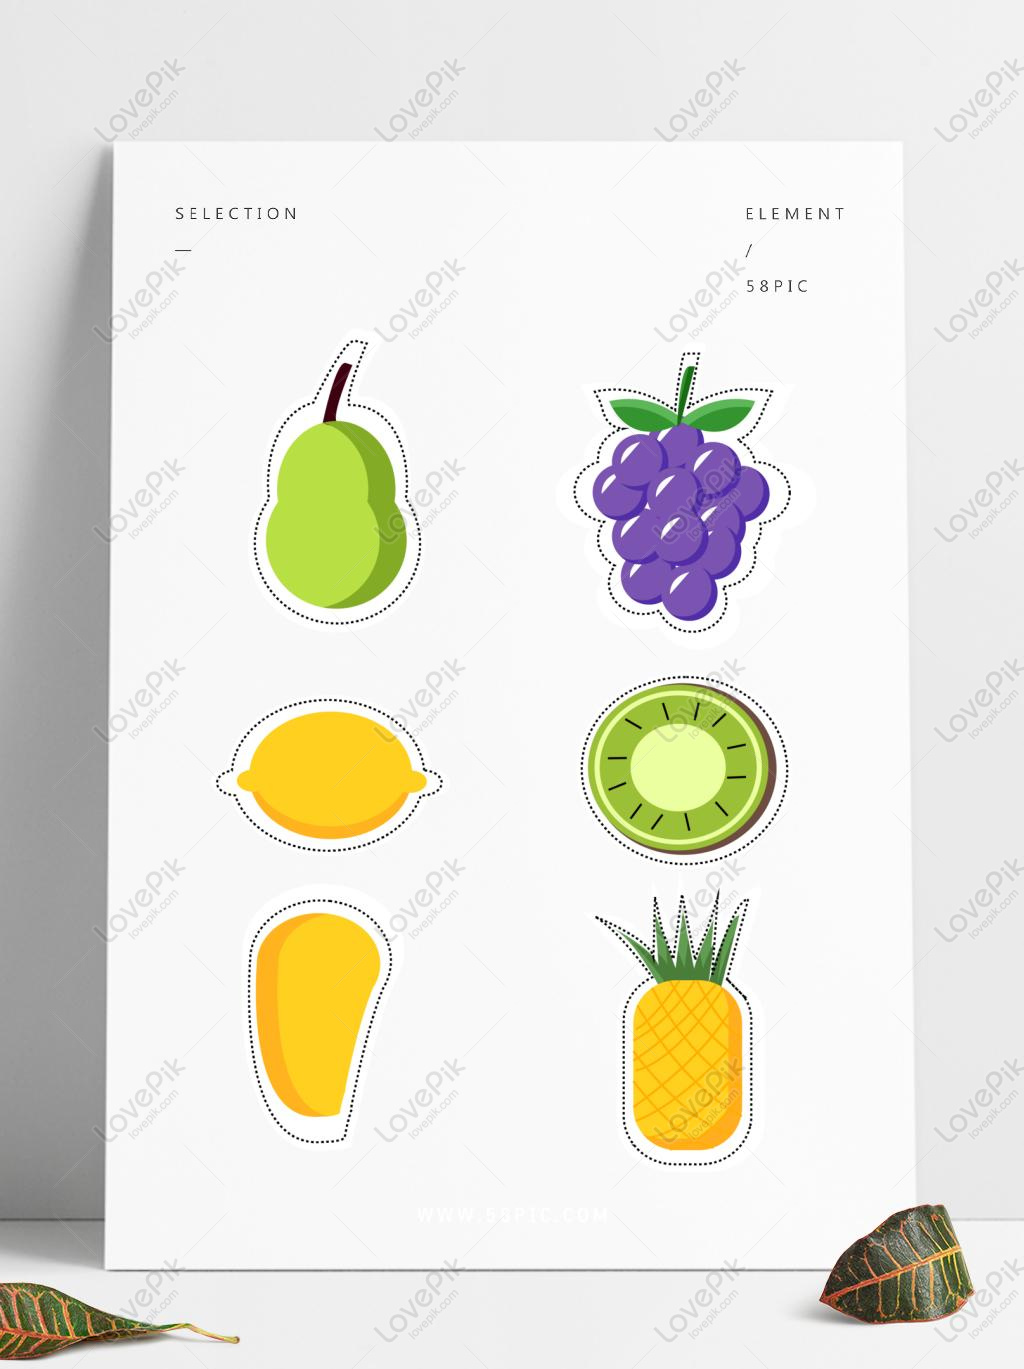 Hình ảnh fruit stickers images sẽ khiến bạn bị mê hoặc với những chi tiết khéo léo được tái hiện trên những miếng dán trái cây đầy màu sắc. Dấu ấn riêng biệt của từng loại trái cây được thể hiện rõ nét, đem lại cho bạn một trải nghiệm trang trí vô cùng độc đáo.